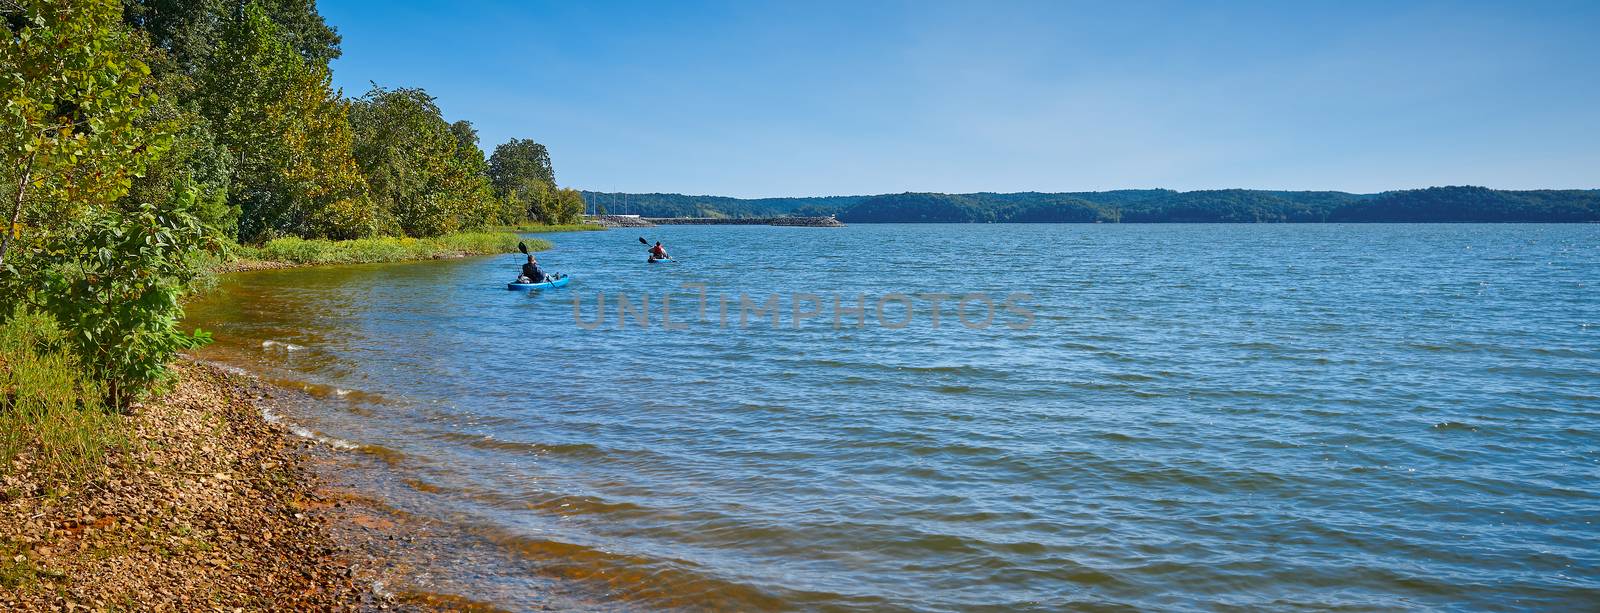 Kayakers on Kentucky Lake near Kenlake State Resort Park, Kentuc by patrickstock